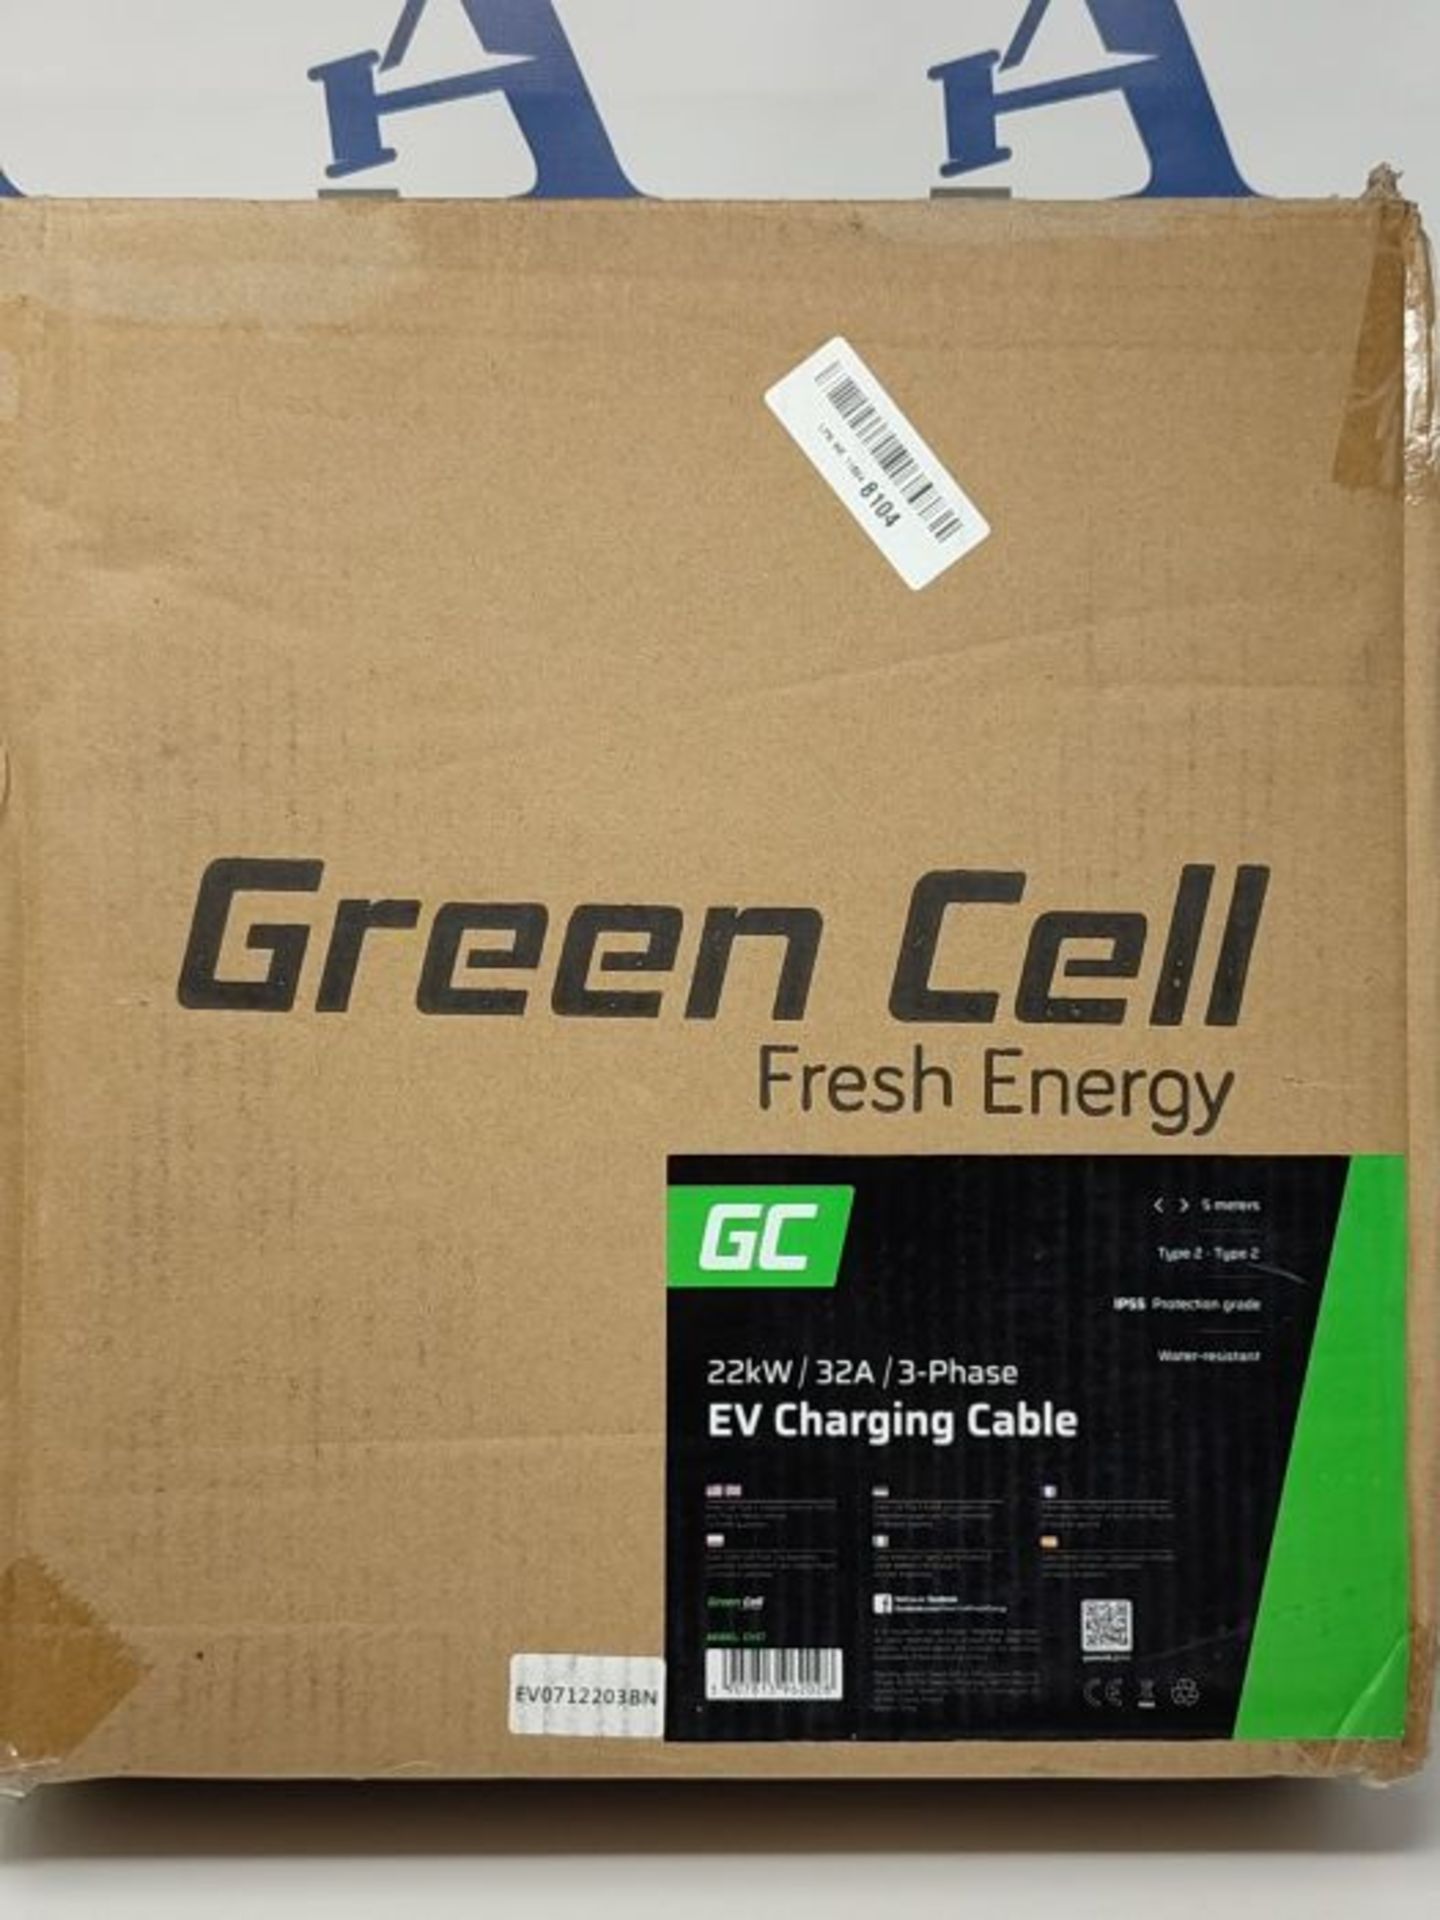 RRP £189.00 Green Cell GC Typ 2 Ladekabel für EV Elektroautos PHEV | 22kW | 32A | 5 Meter | Typ 2 - Image 2 of 3